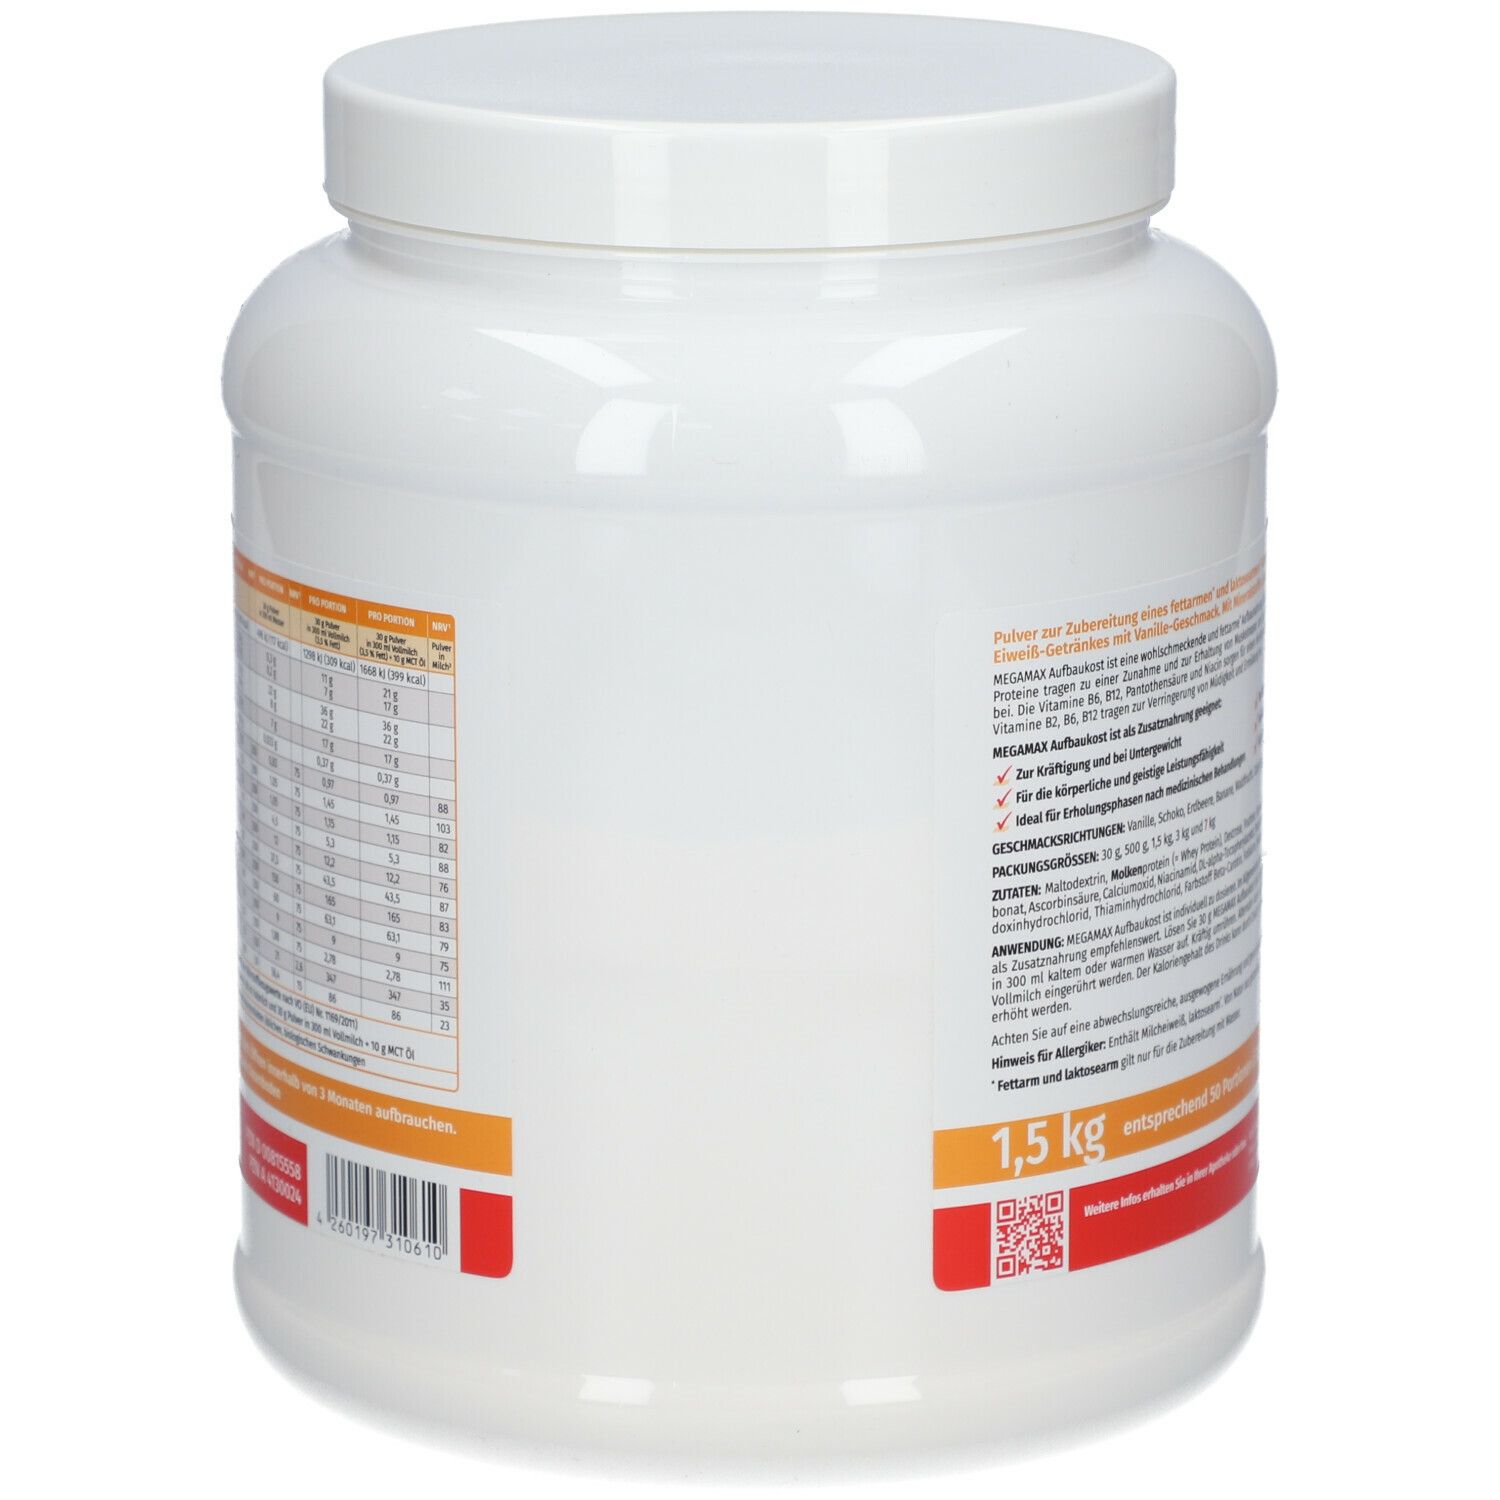 MEGAMAX® Fit & Vital Concentré de glucides et de protéines pour l'alimentation de base, goût vanille